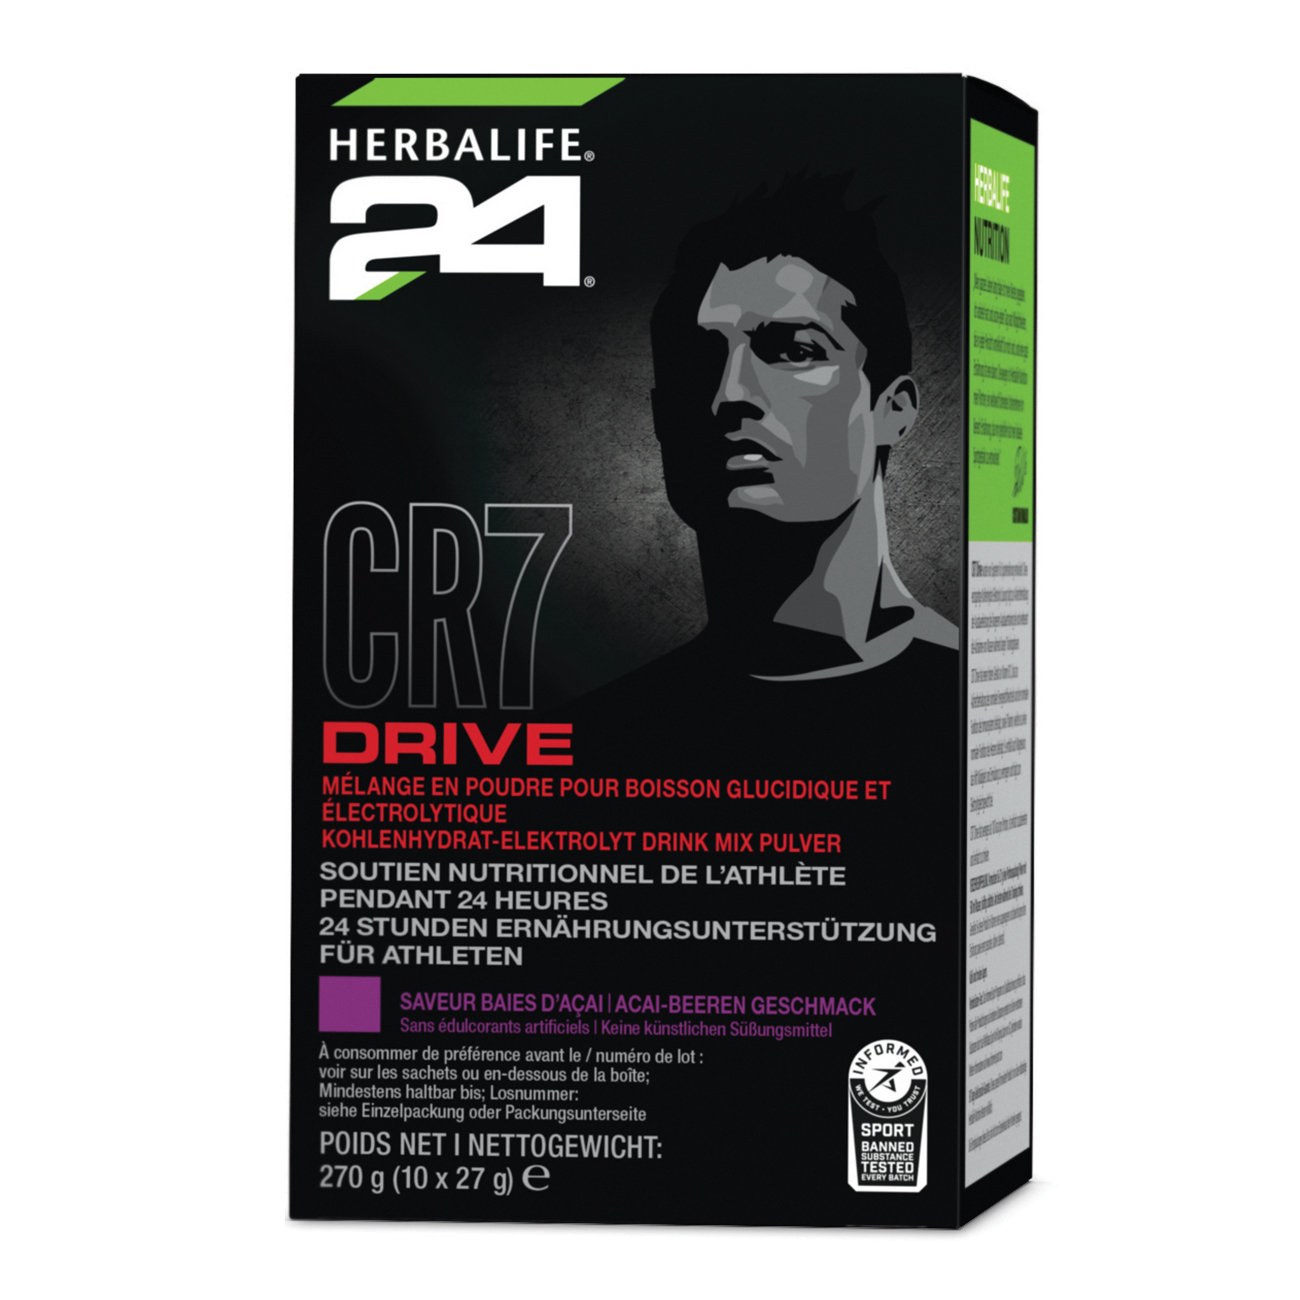 CR7 Drive – Pour une hydratation avancée et le maintien d'une performance d'endurance, boisson glucidique et électrolytique, encore plus pratique en sachet. 